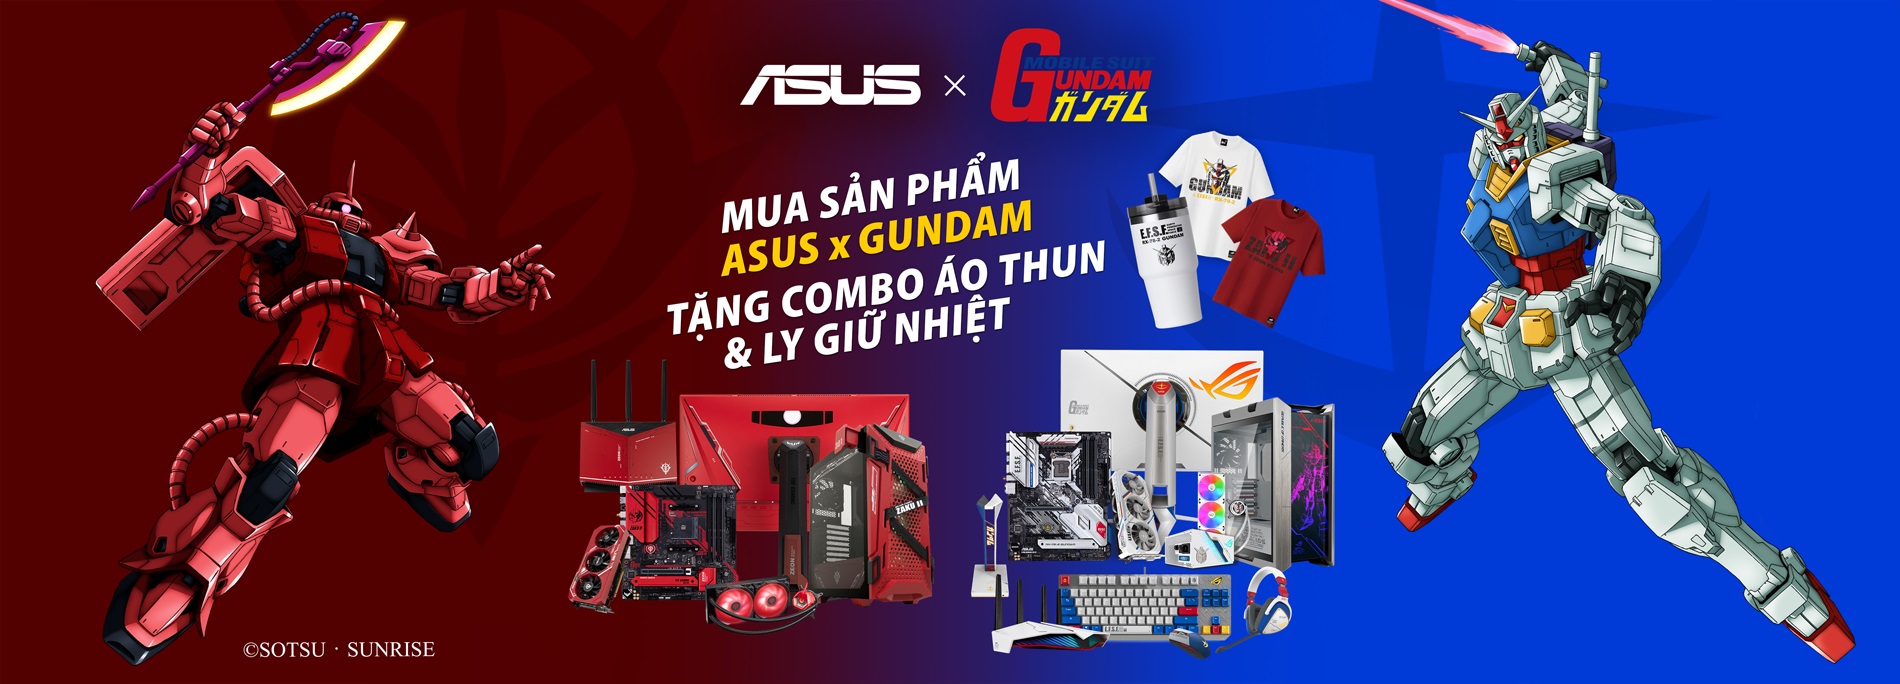 ASUS giới thiệu loạt mainboard Z590 và hệ sinh thái ASUS x Gundam tại Việt Nam